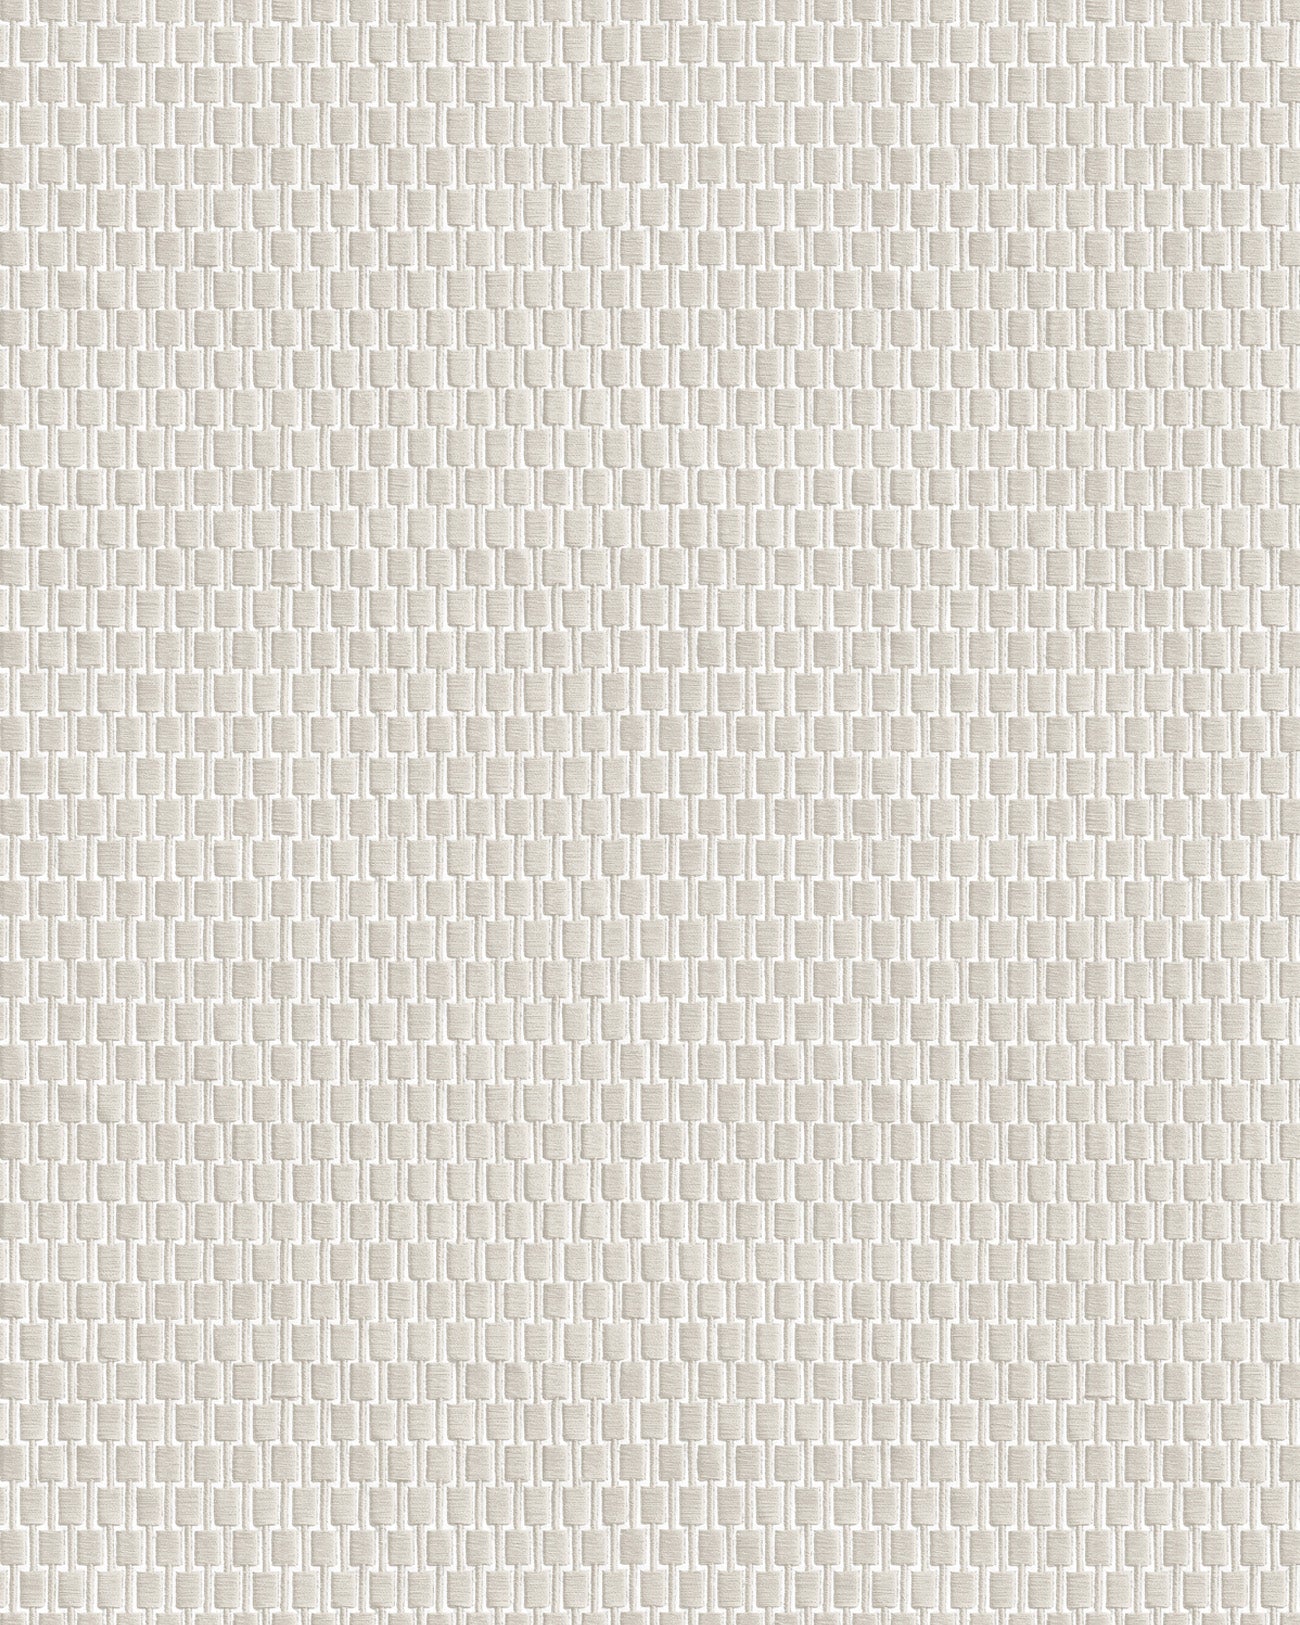 Tone-on-tone wallpaper Profhome DE120032-DI hot-embossed non-woven wallpaper tone-on-tone glossy white 5.33 m2